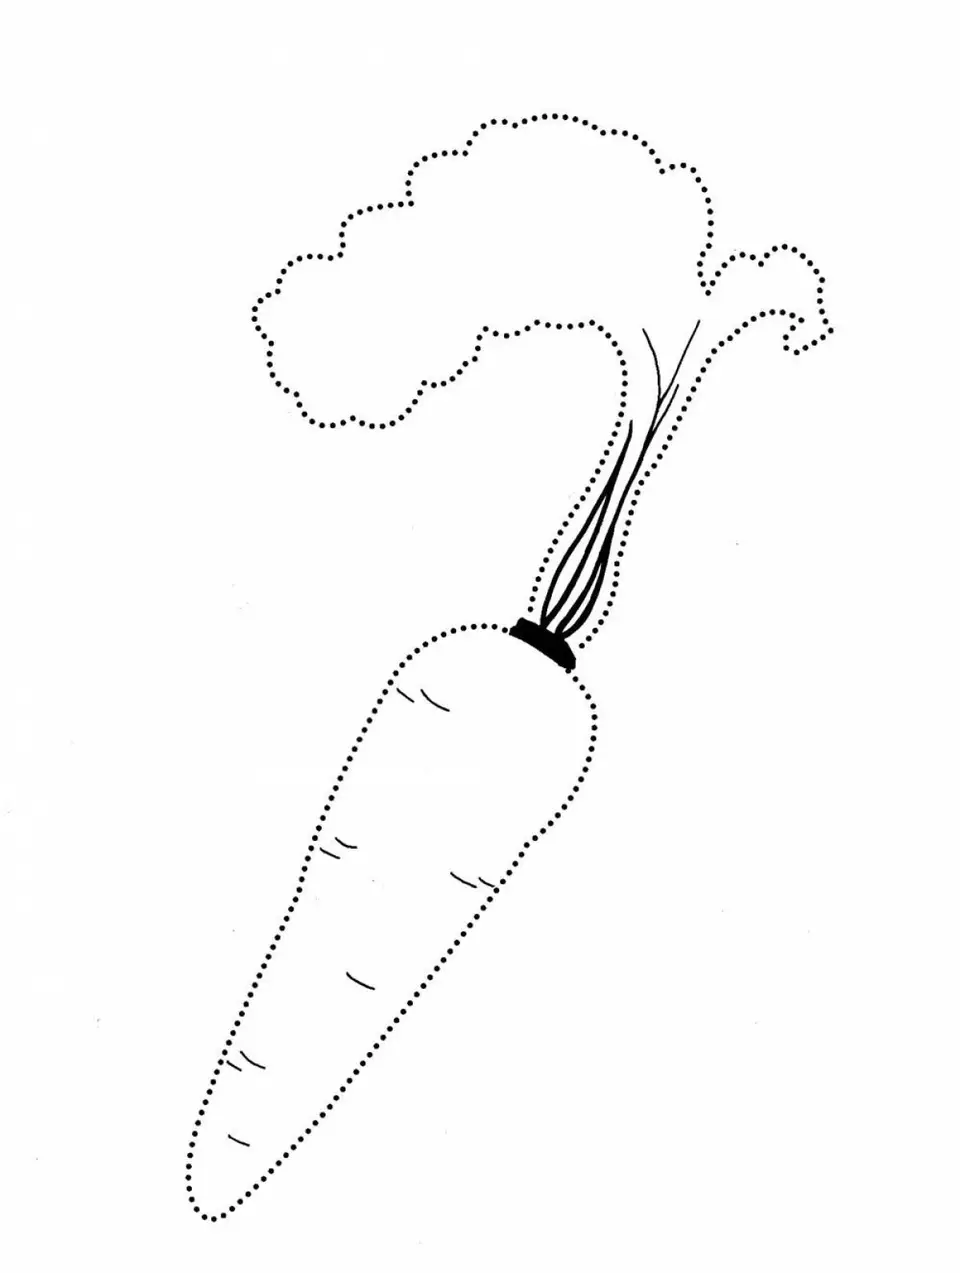 Морковка рисунок для детей карандашом